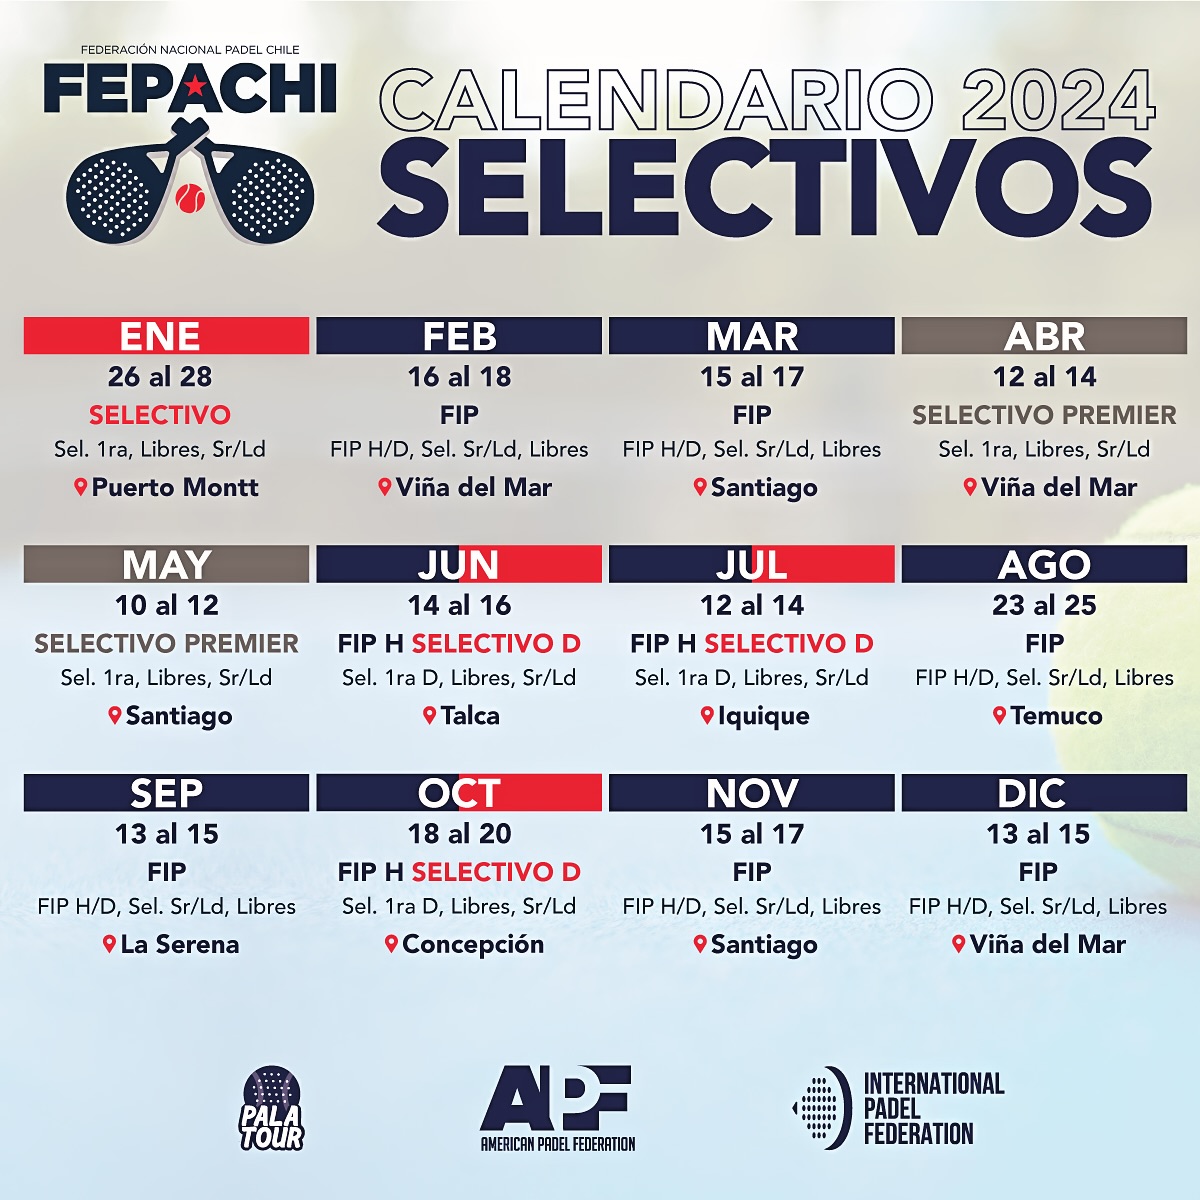 Calendario selectivos FEPACHI 2024